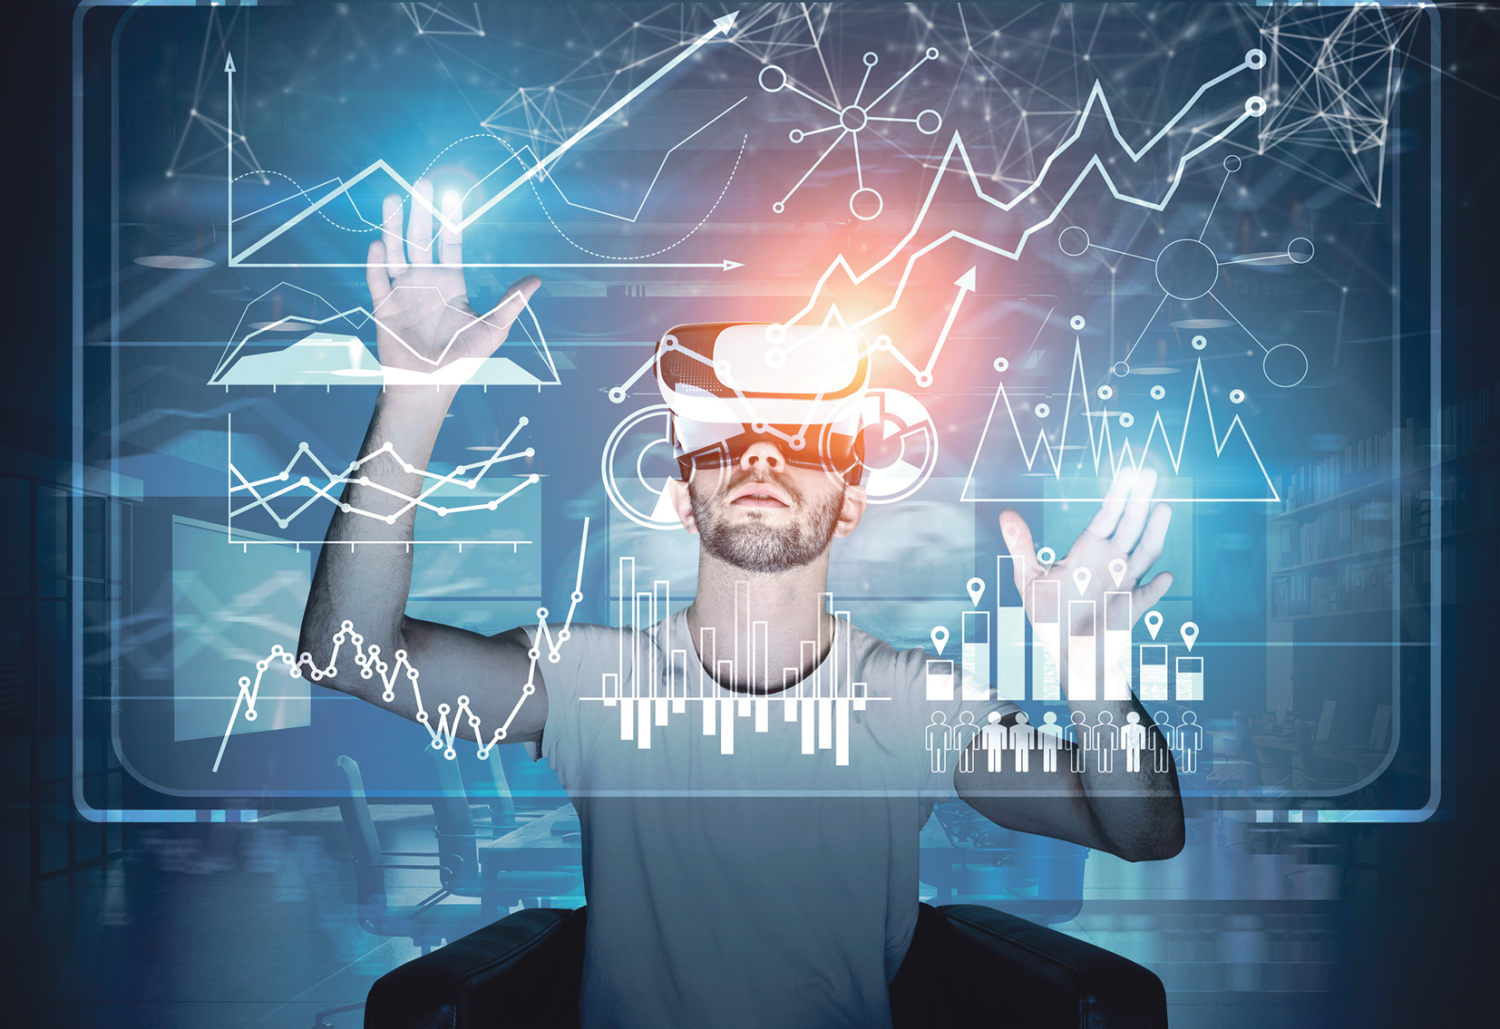 Eine Person mit aufgesetzter VR-Brille schaut sich Statistiken an.